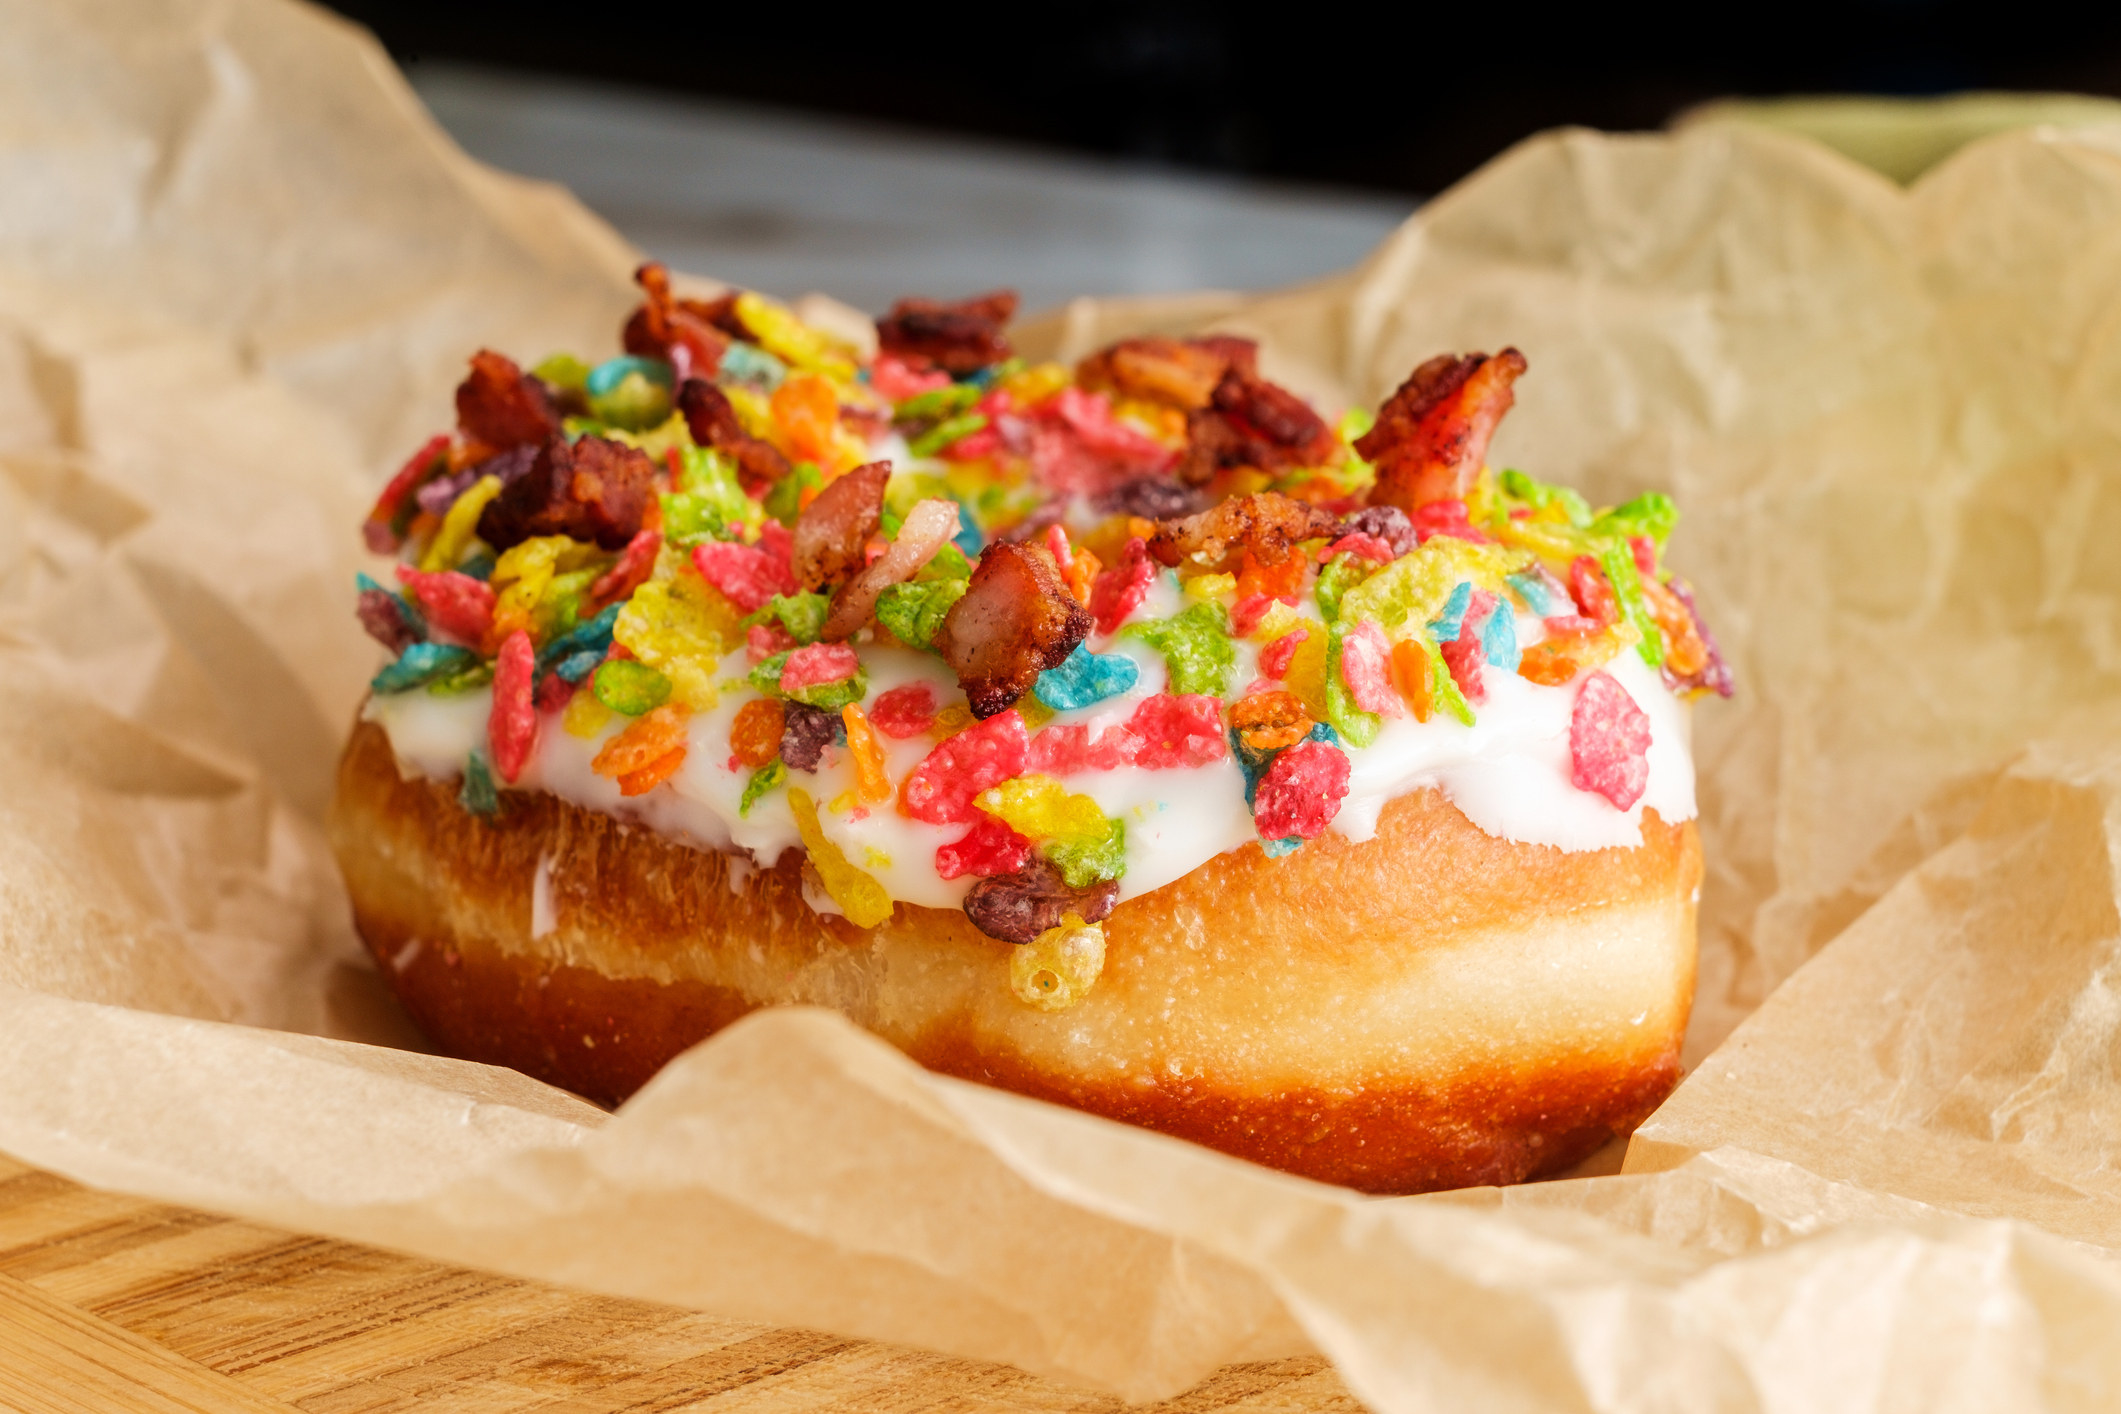 A bacon fruity rainbow cereal donut